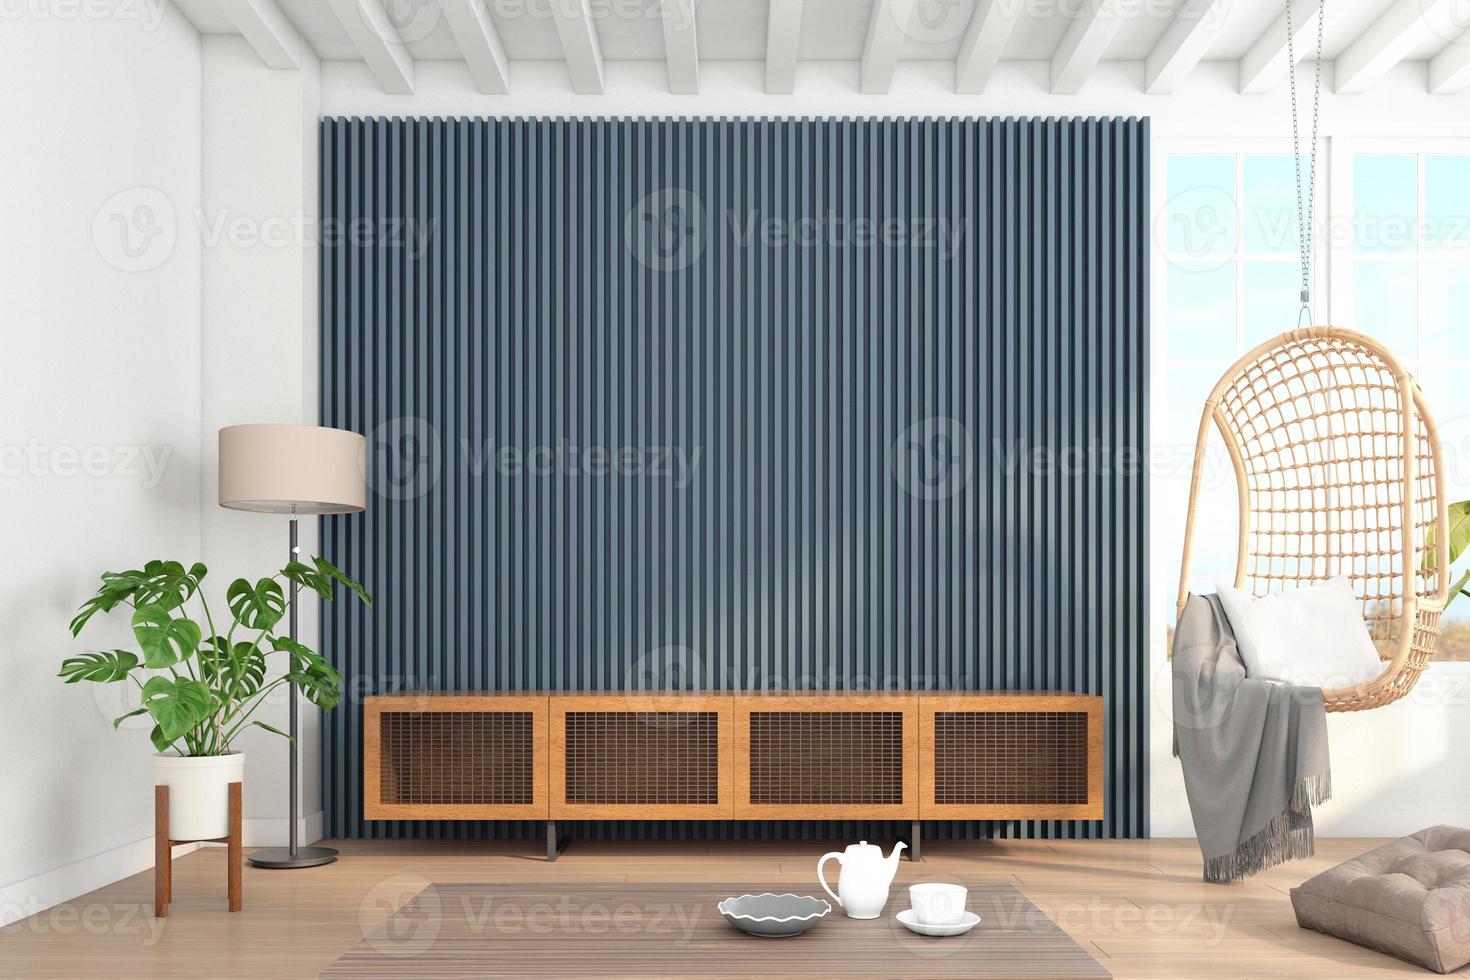 kast hout voor tv op de blauwgrijze lamelwand in woonkamer met hangstoel, minimalistisch modern. 3D-rendering foto